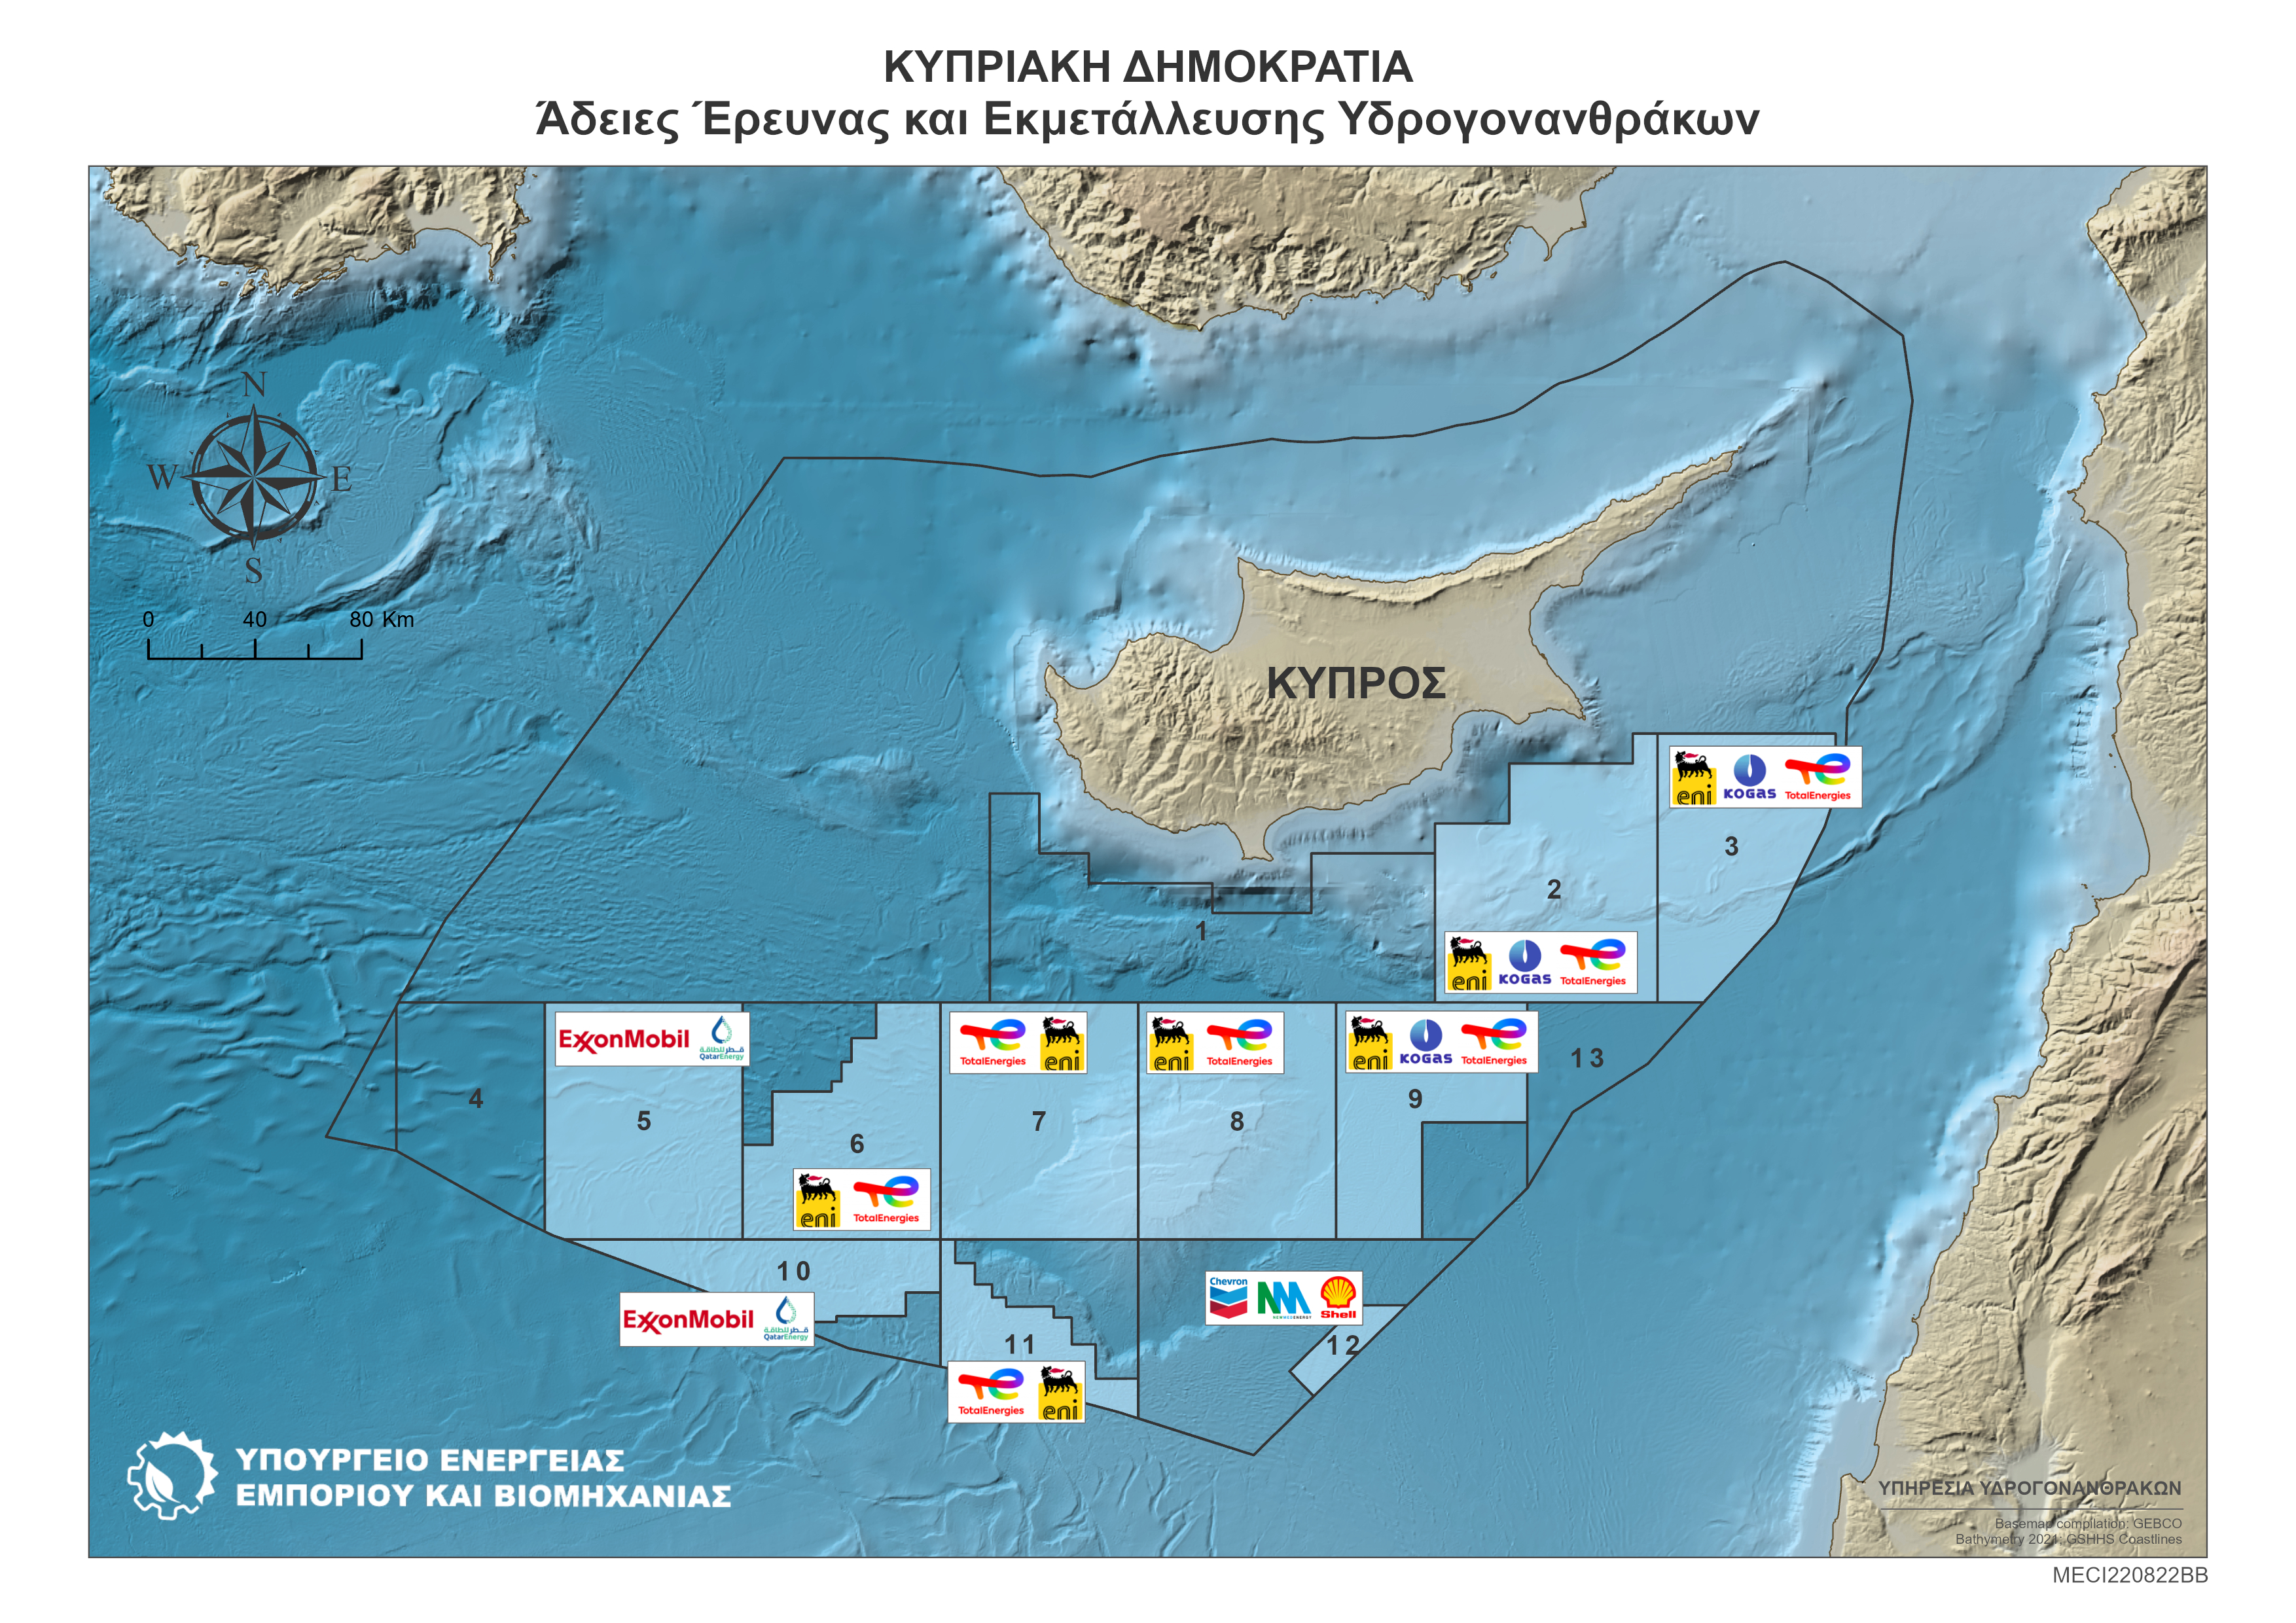 Άδειες Έρευνας και Εκμετάλλευσης Υδρογονανθράκων της Κυπριακής Δημοκρατίας